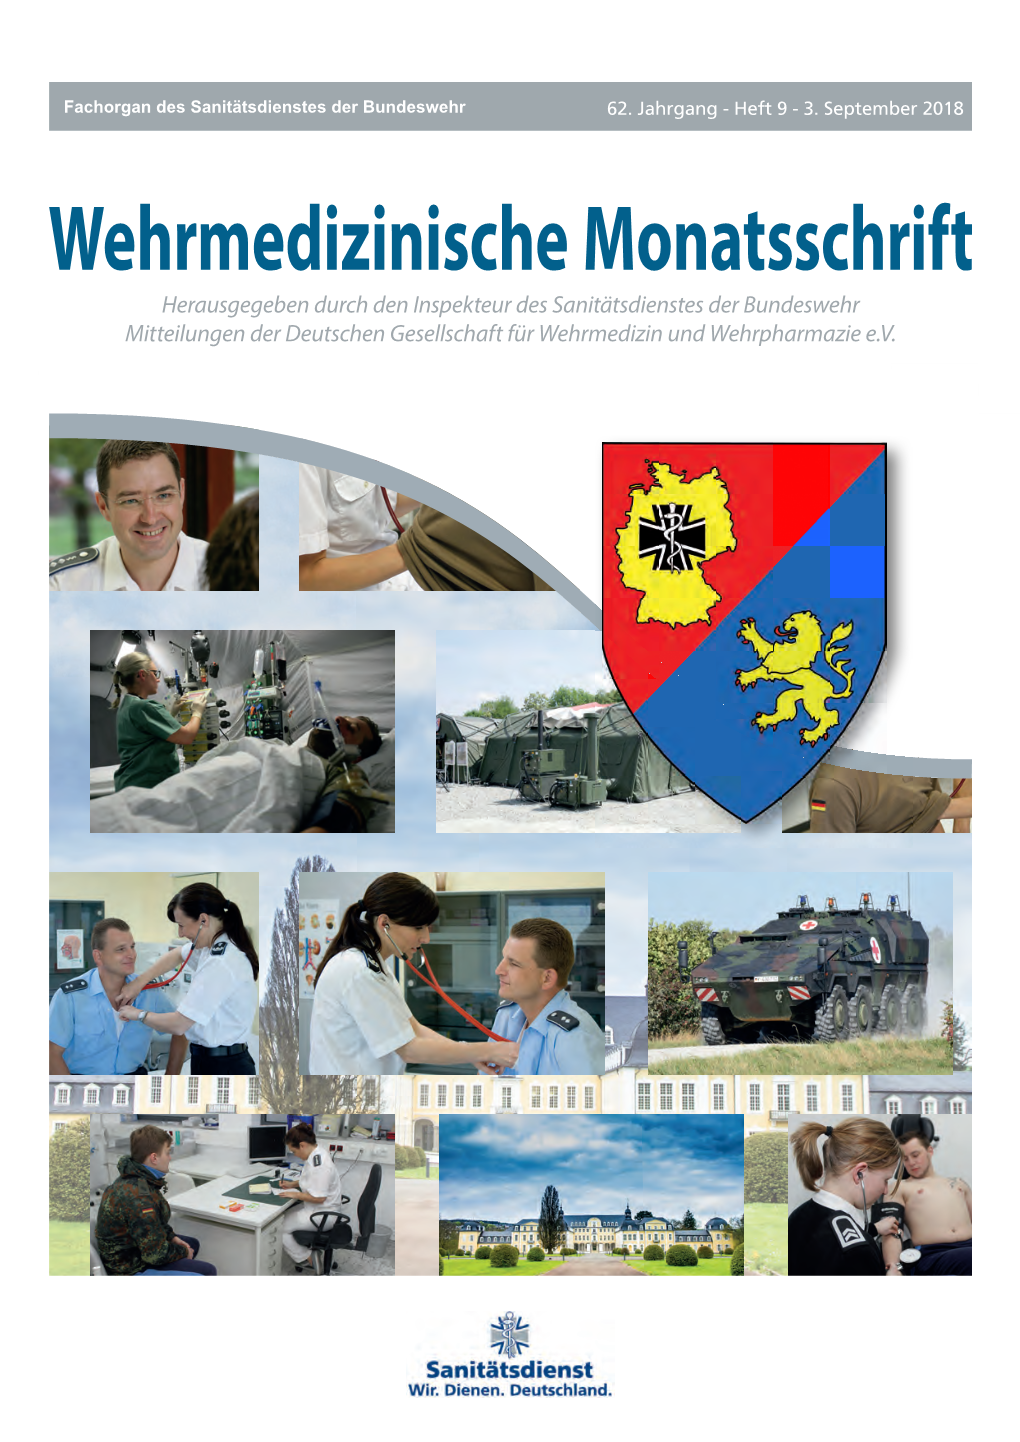 Herausgegeben Durch Den Inspekteur Des Sanitätsdienstes Der Bundeswehr Mitteilungen Der Deutschen Gesellschaft Für Wehrmedizin Und Wehrpharmazie E.V